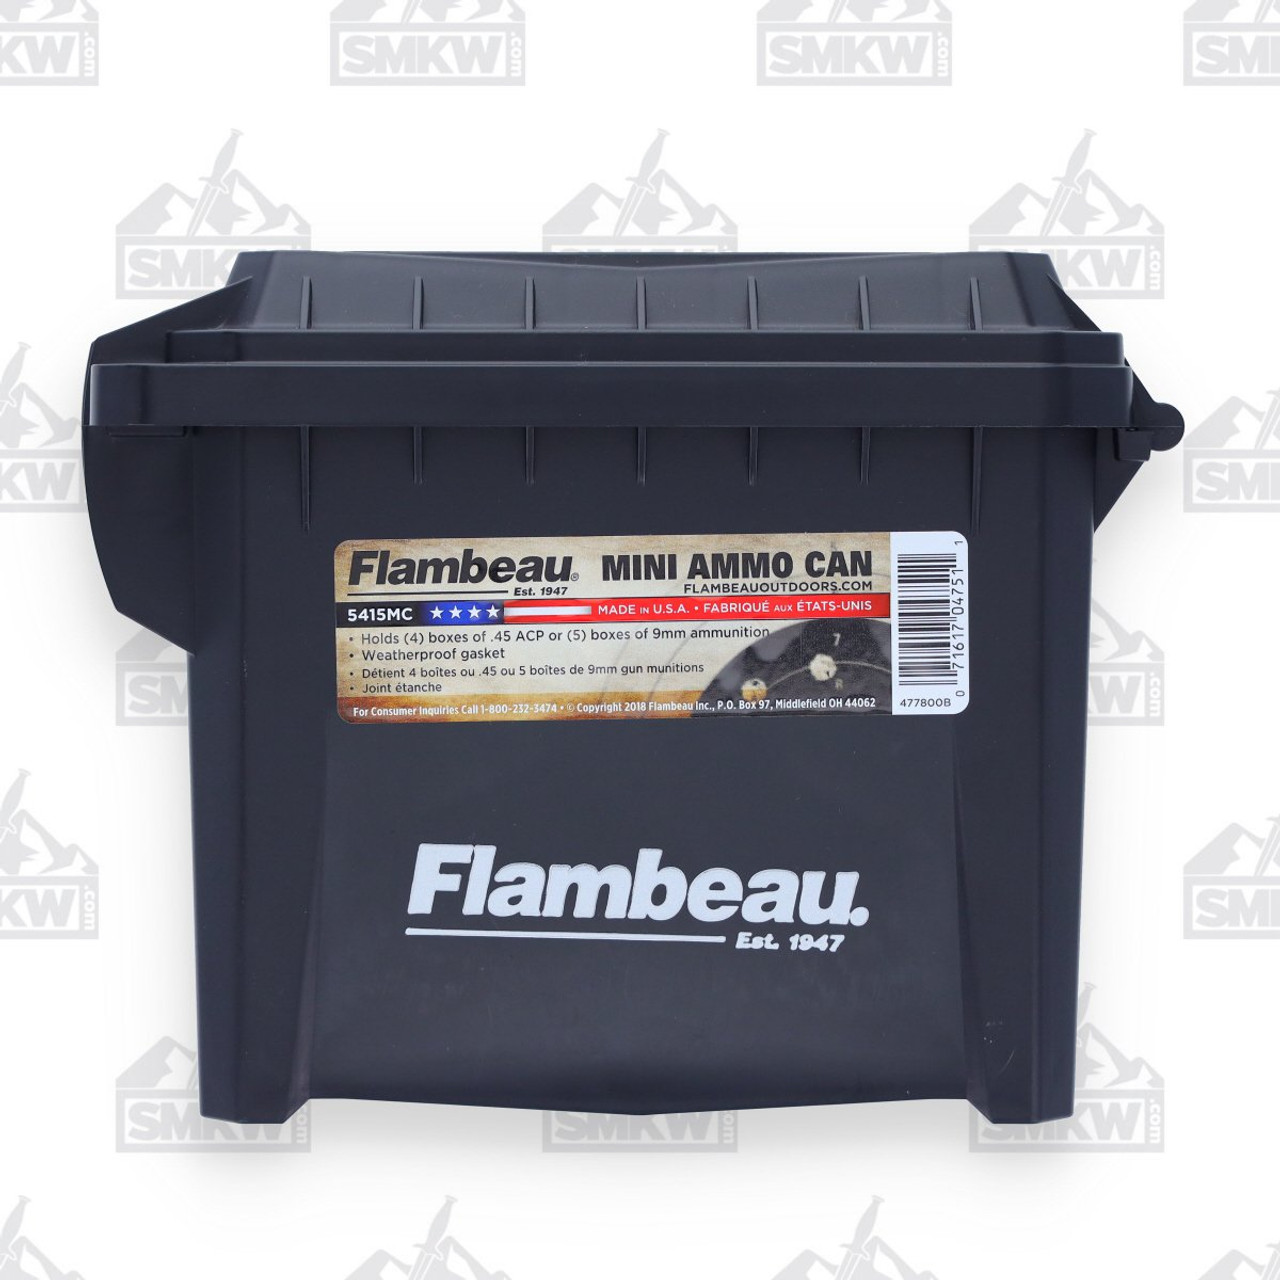 Flambeau Black Mini Ammo Can - Smoky Mountain Knife Works